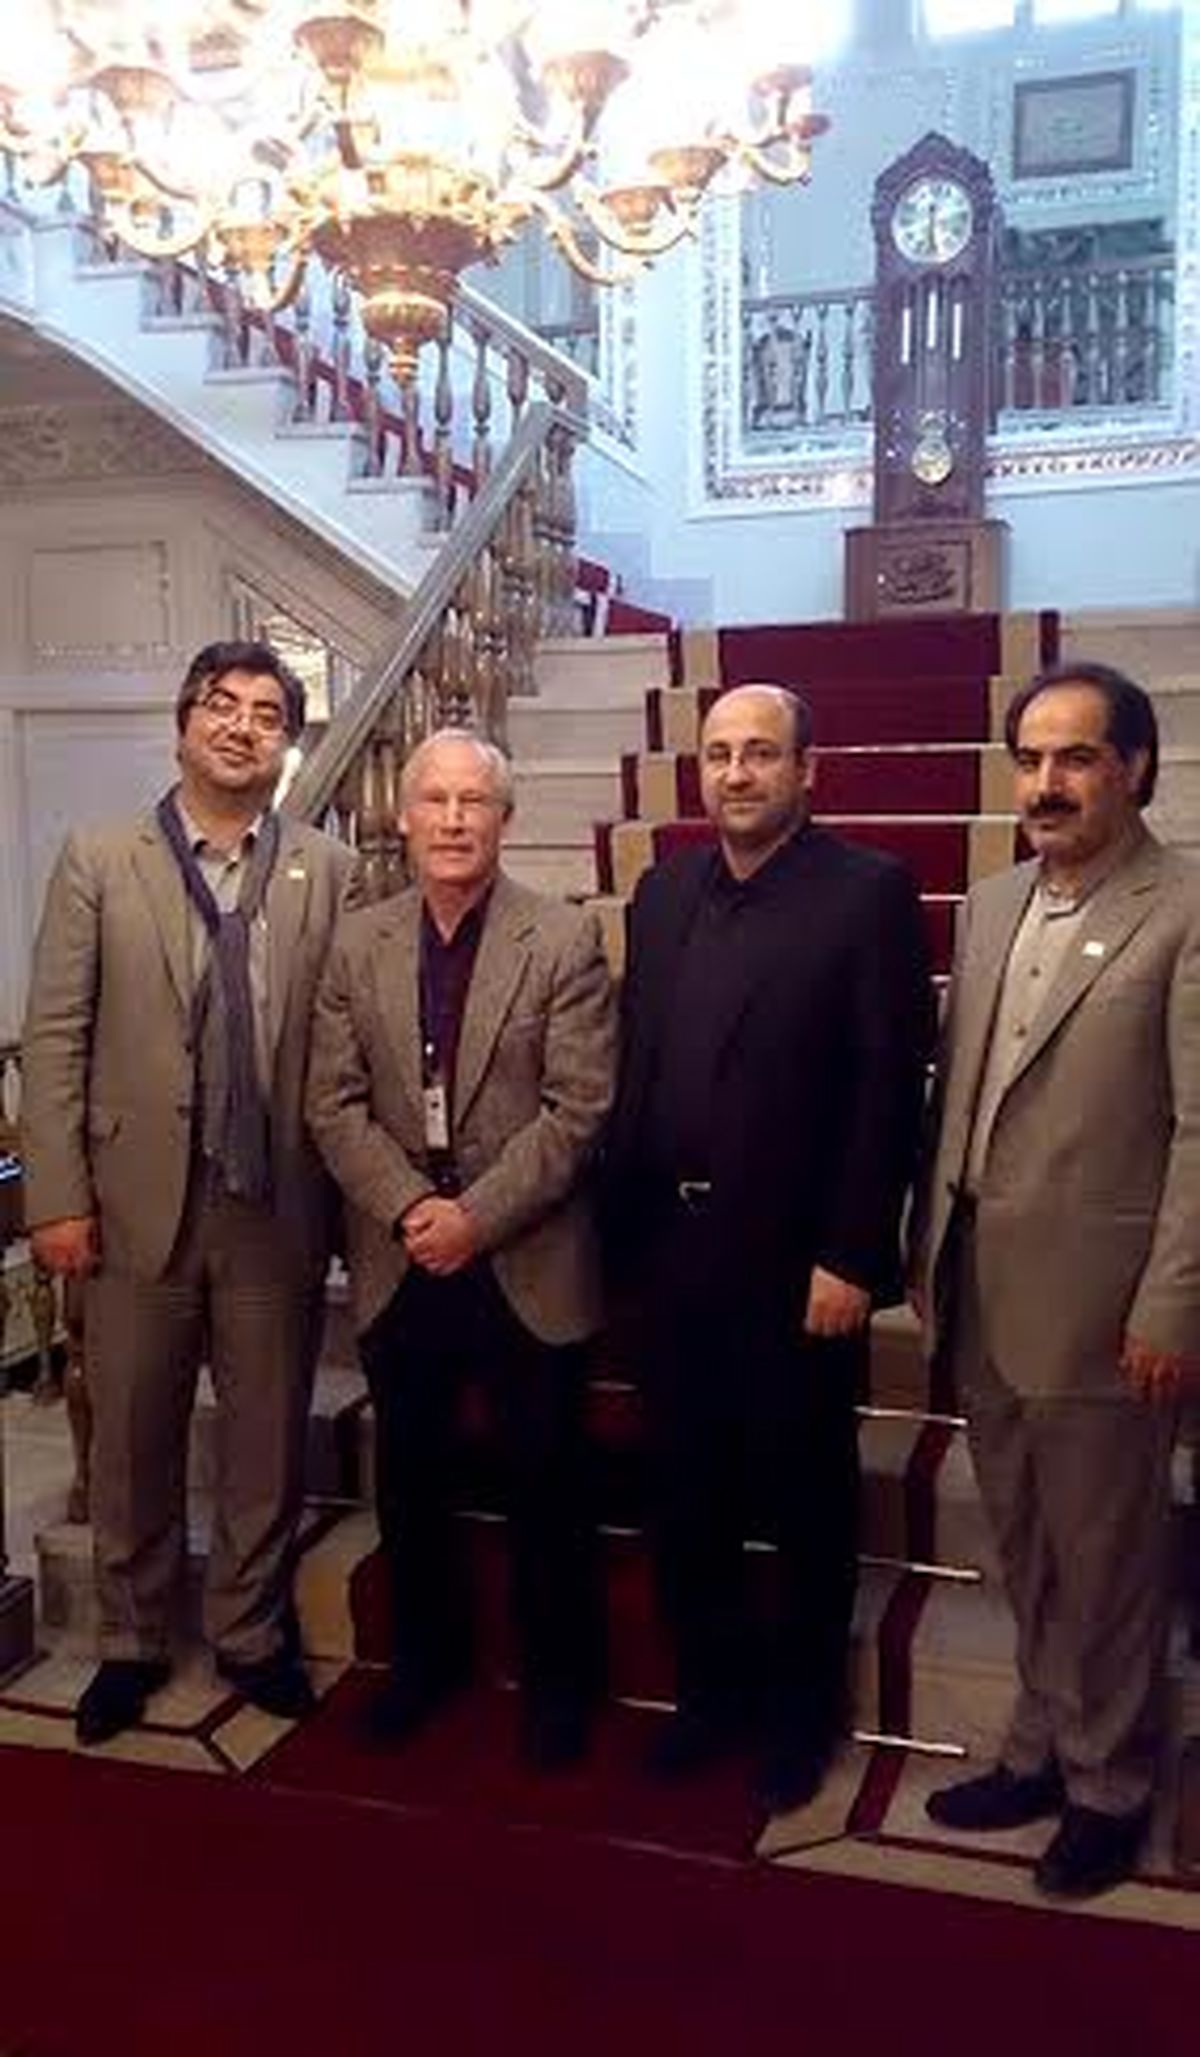 نامه شهردار یوجین آمریکا توسط میهمان جشنواره "سینماحقیقت" به شهردار تهران رسید